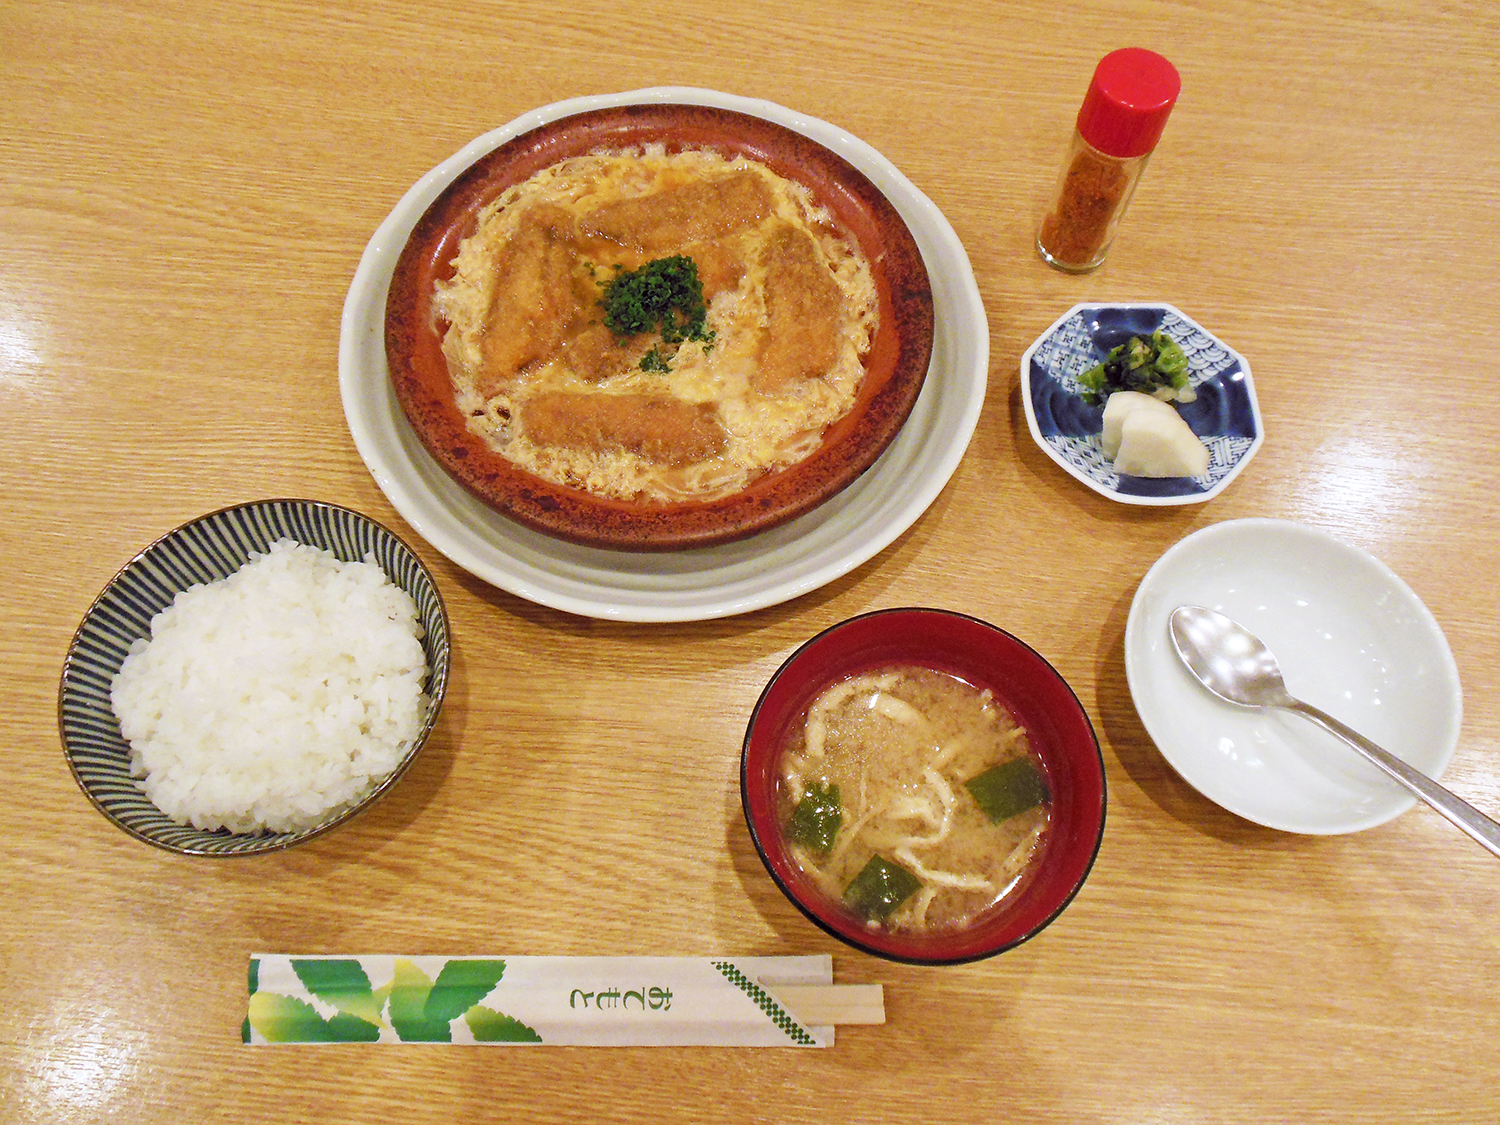 いわしの柳川鍋定食990円は、ご飯、味噌汁、香の物付き。ご飯は2杯目までおかわり無料。